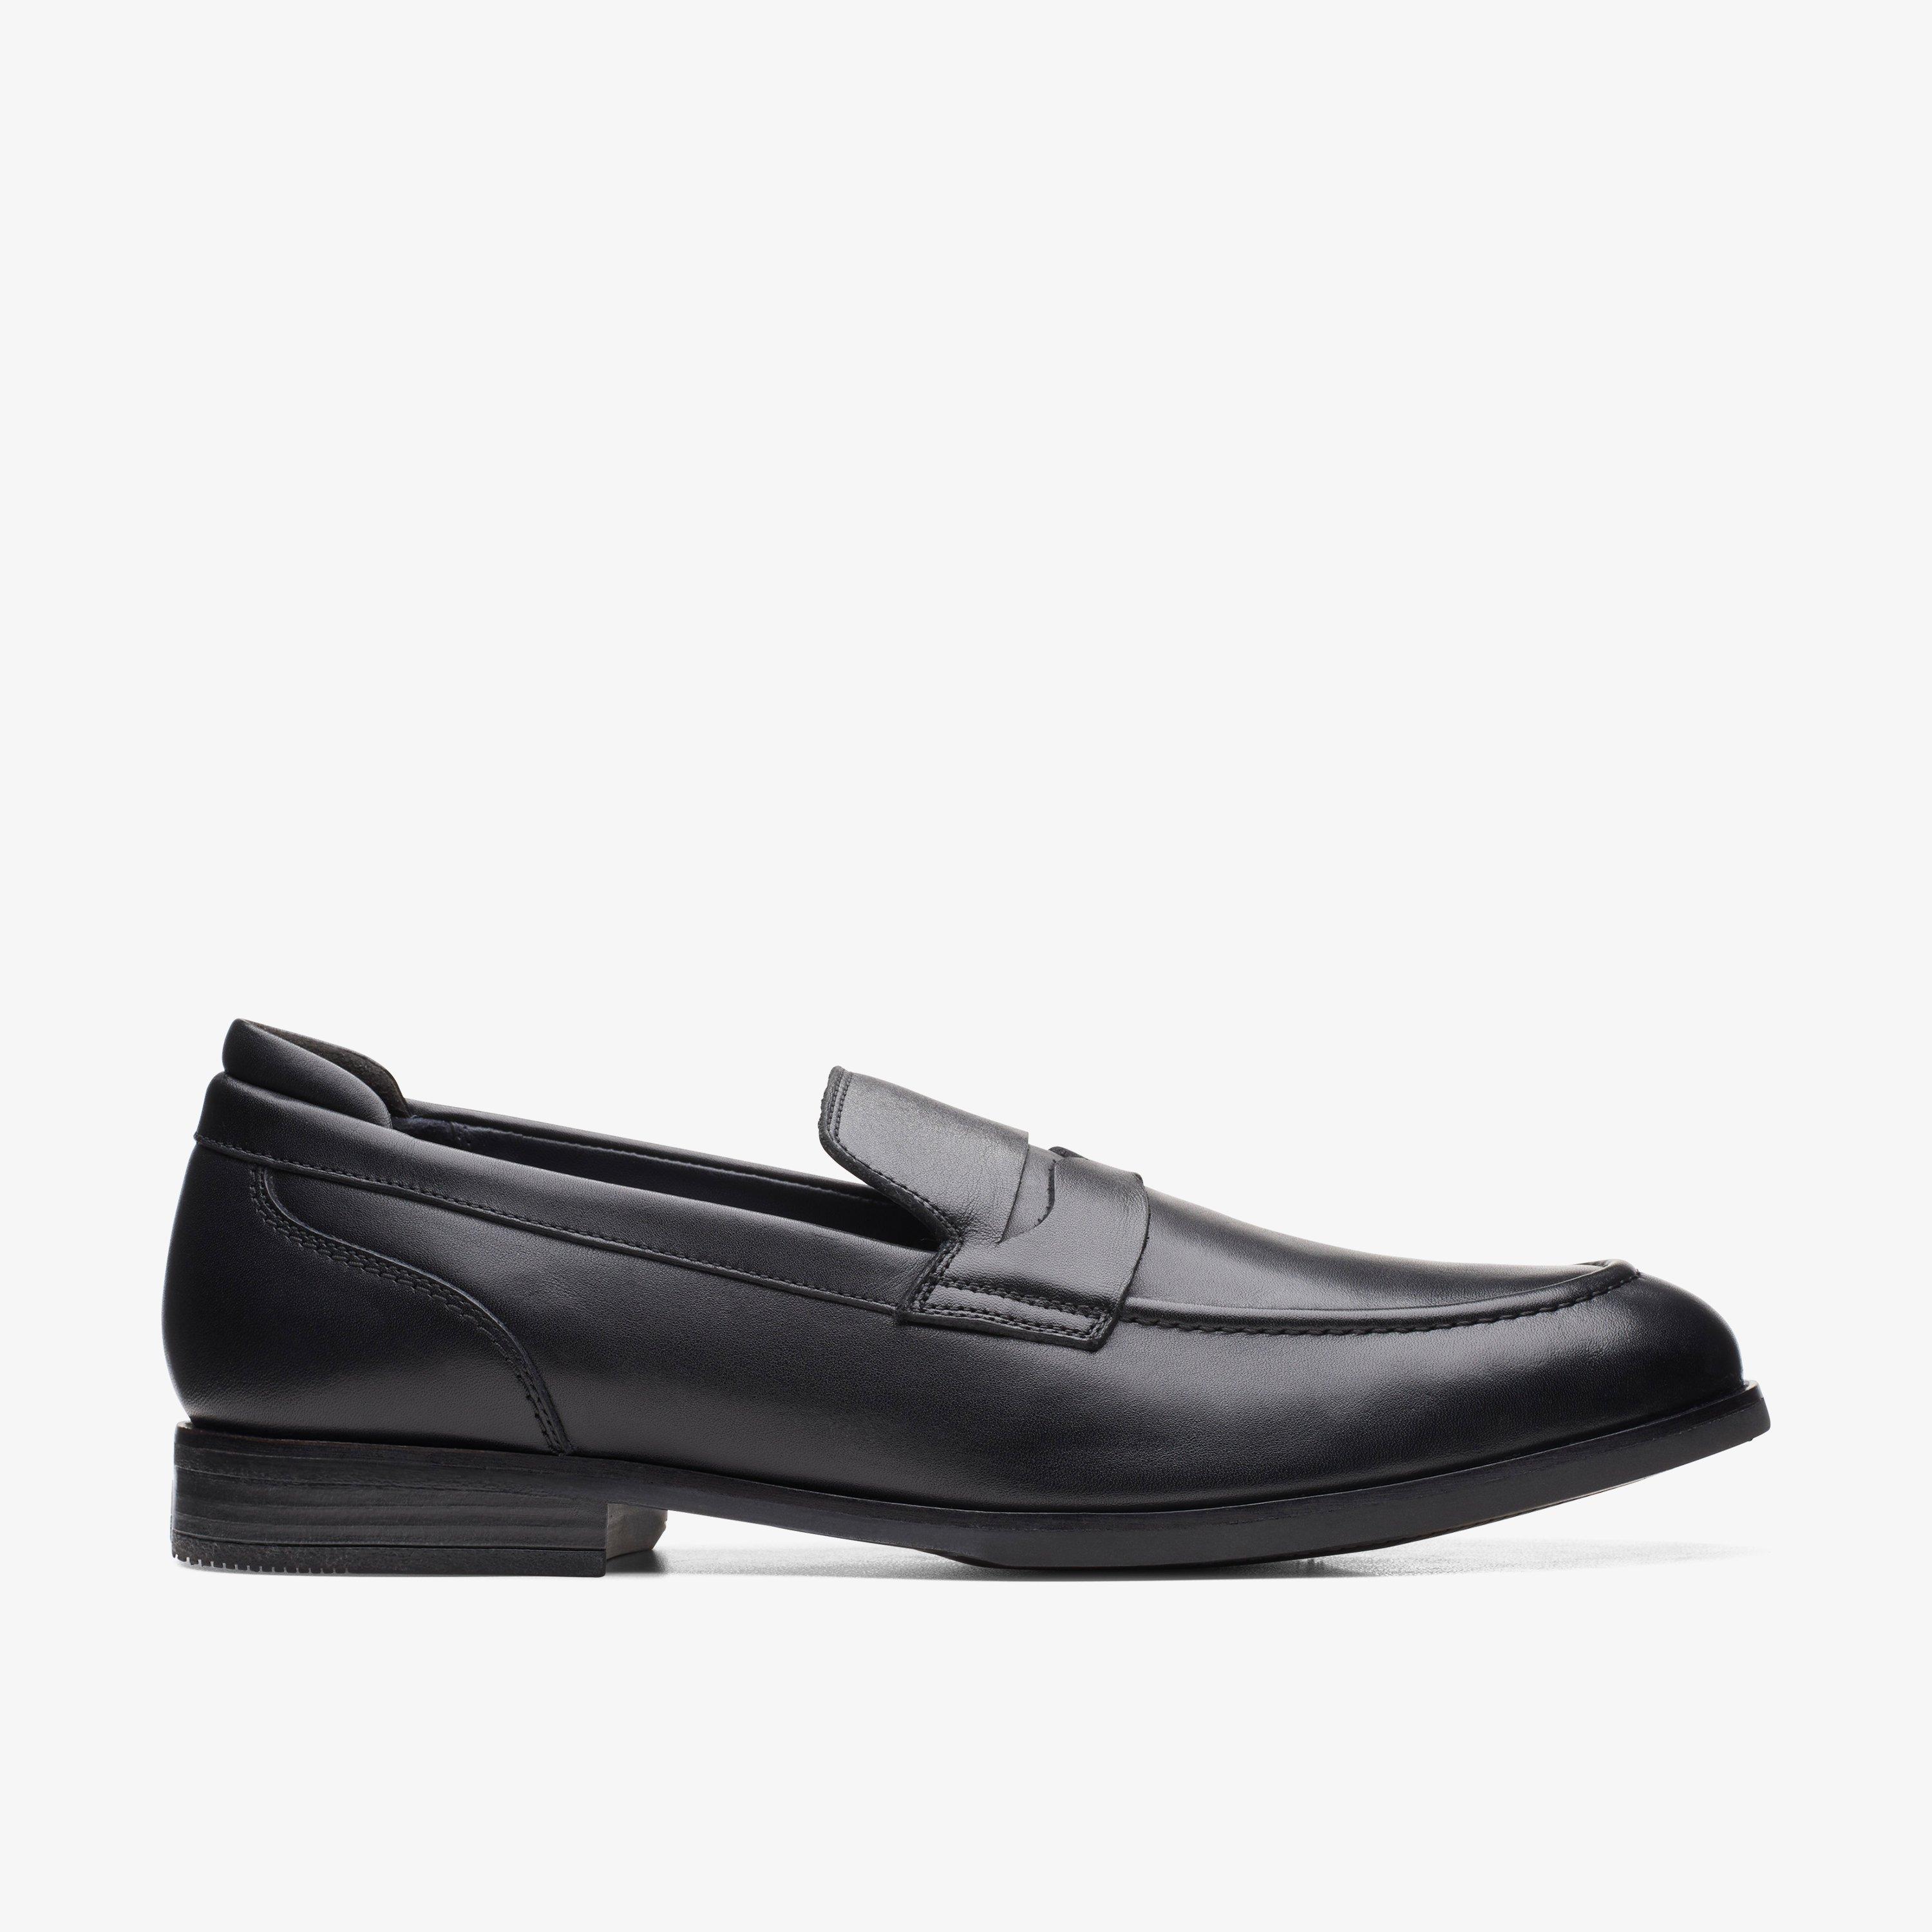 Size 12 Clarks Bradish Ease Black Leather shoes